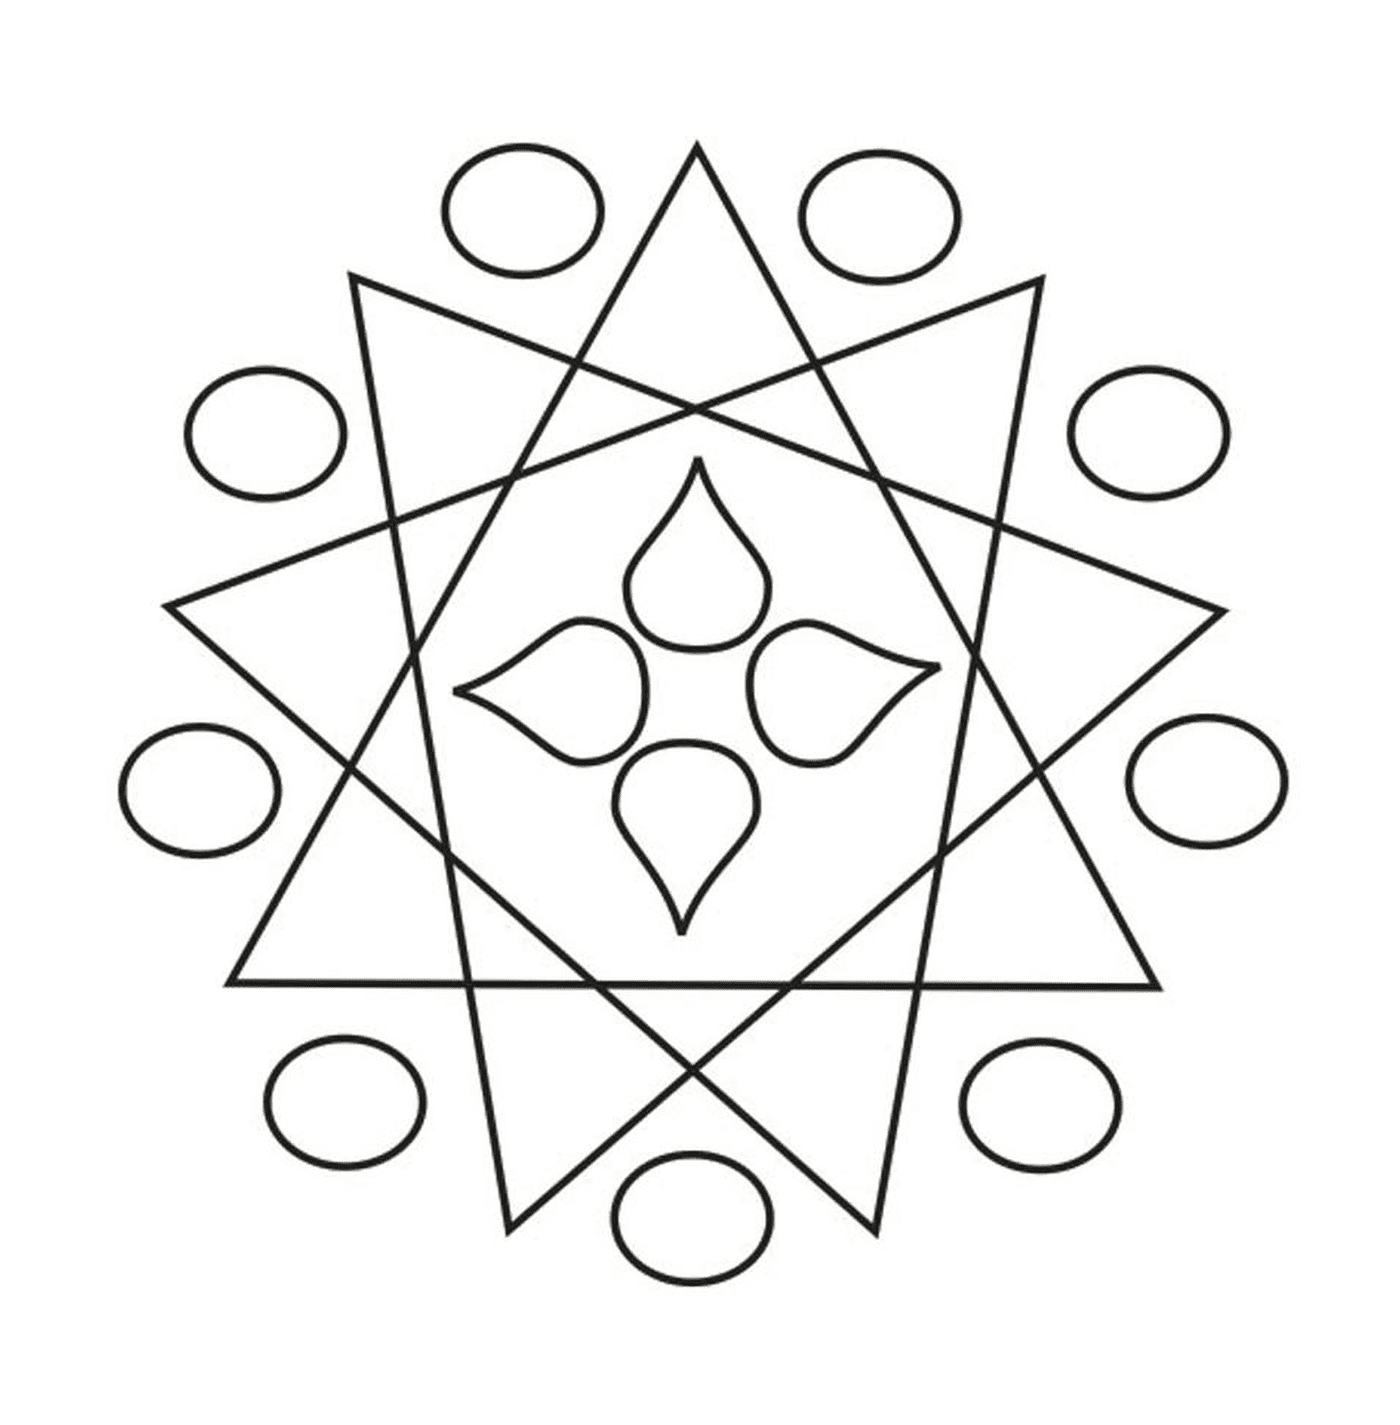  Um desenho geométrico 